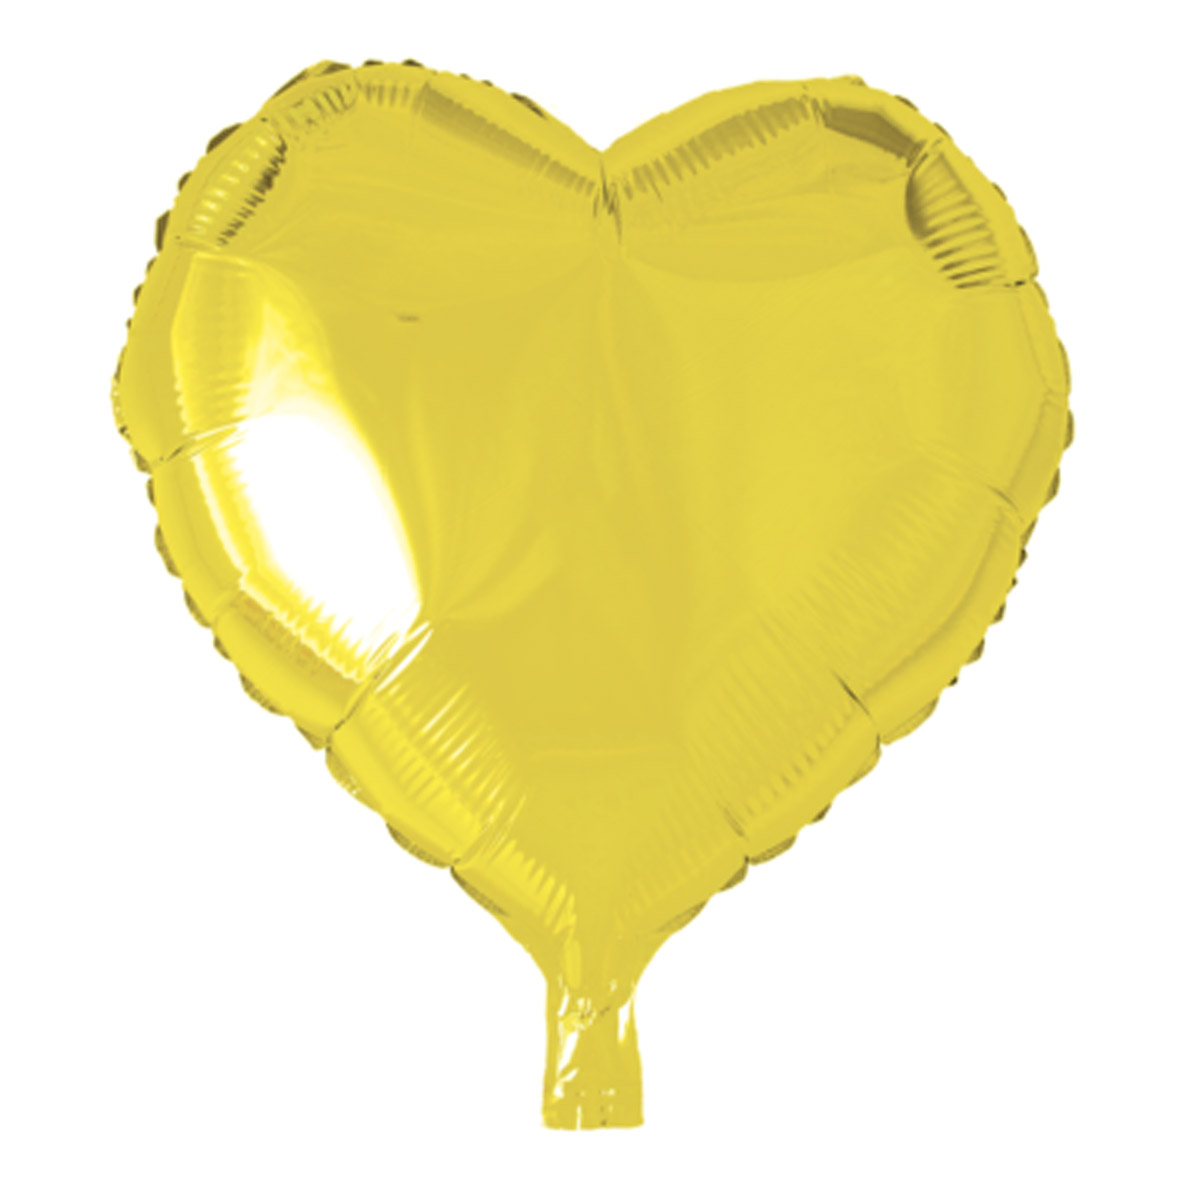 Folieballong, hjärta gul 45 cm